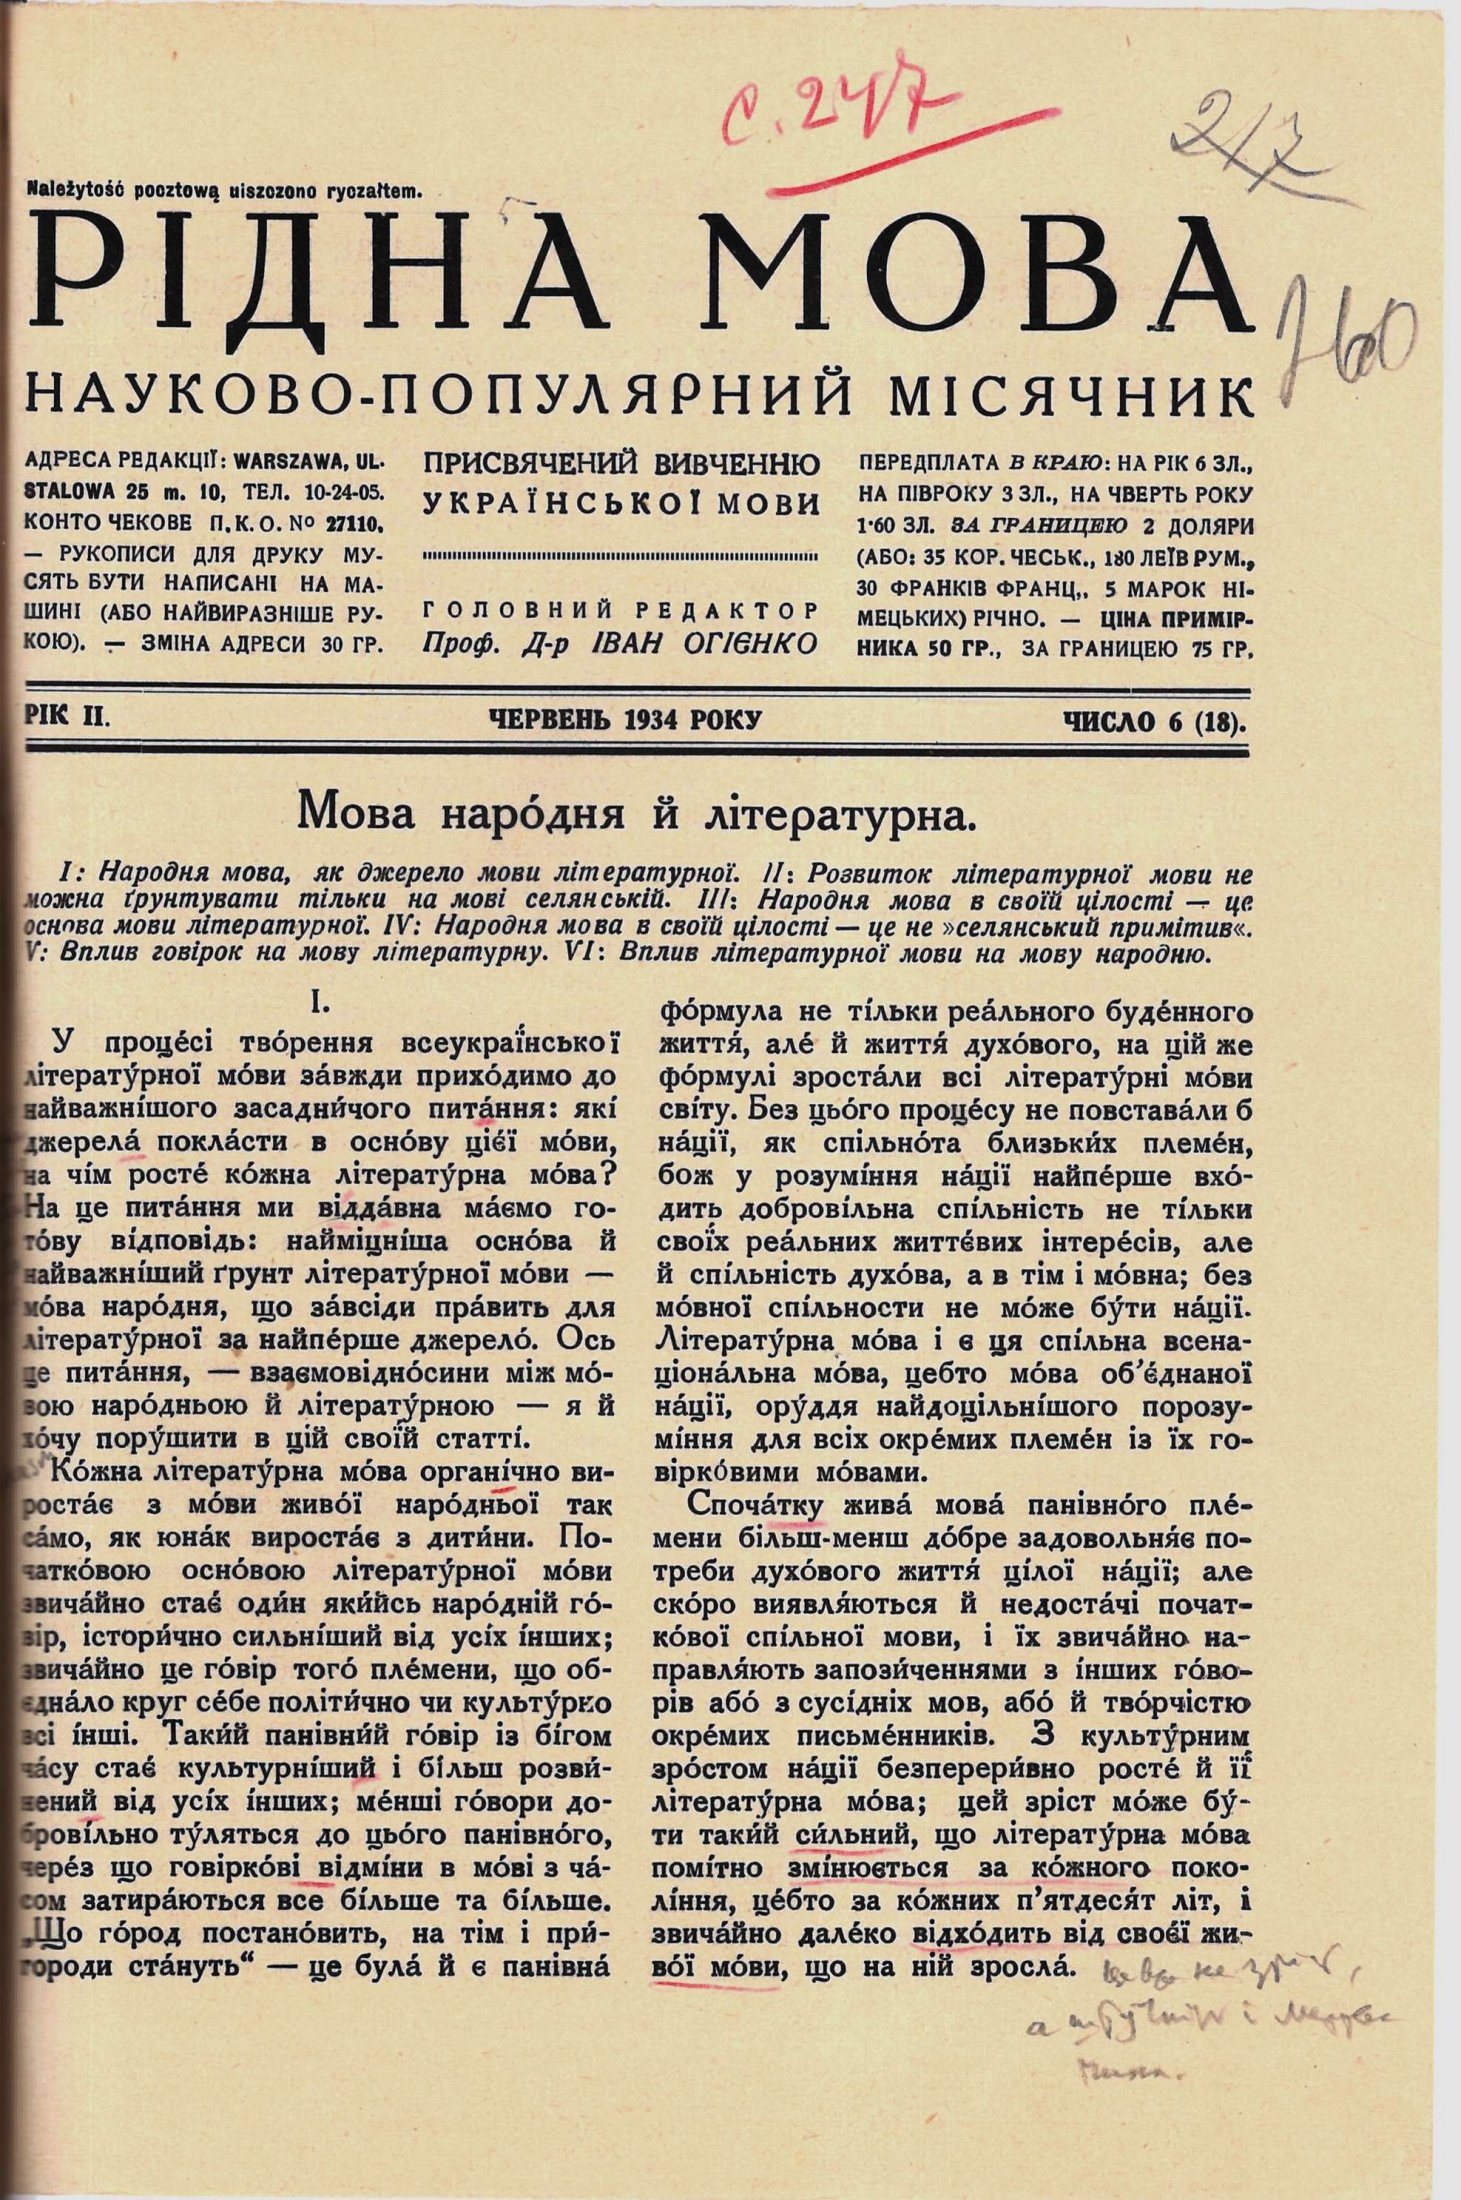 Щомісячний науково-популярний журнал «Рідна Мова», який видавався у 1930-х роках у Варшаві з ініціативи і під безпосереднім керівництвом Івана Огієнка.